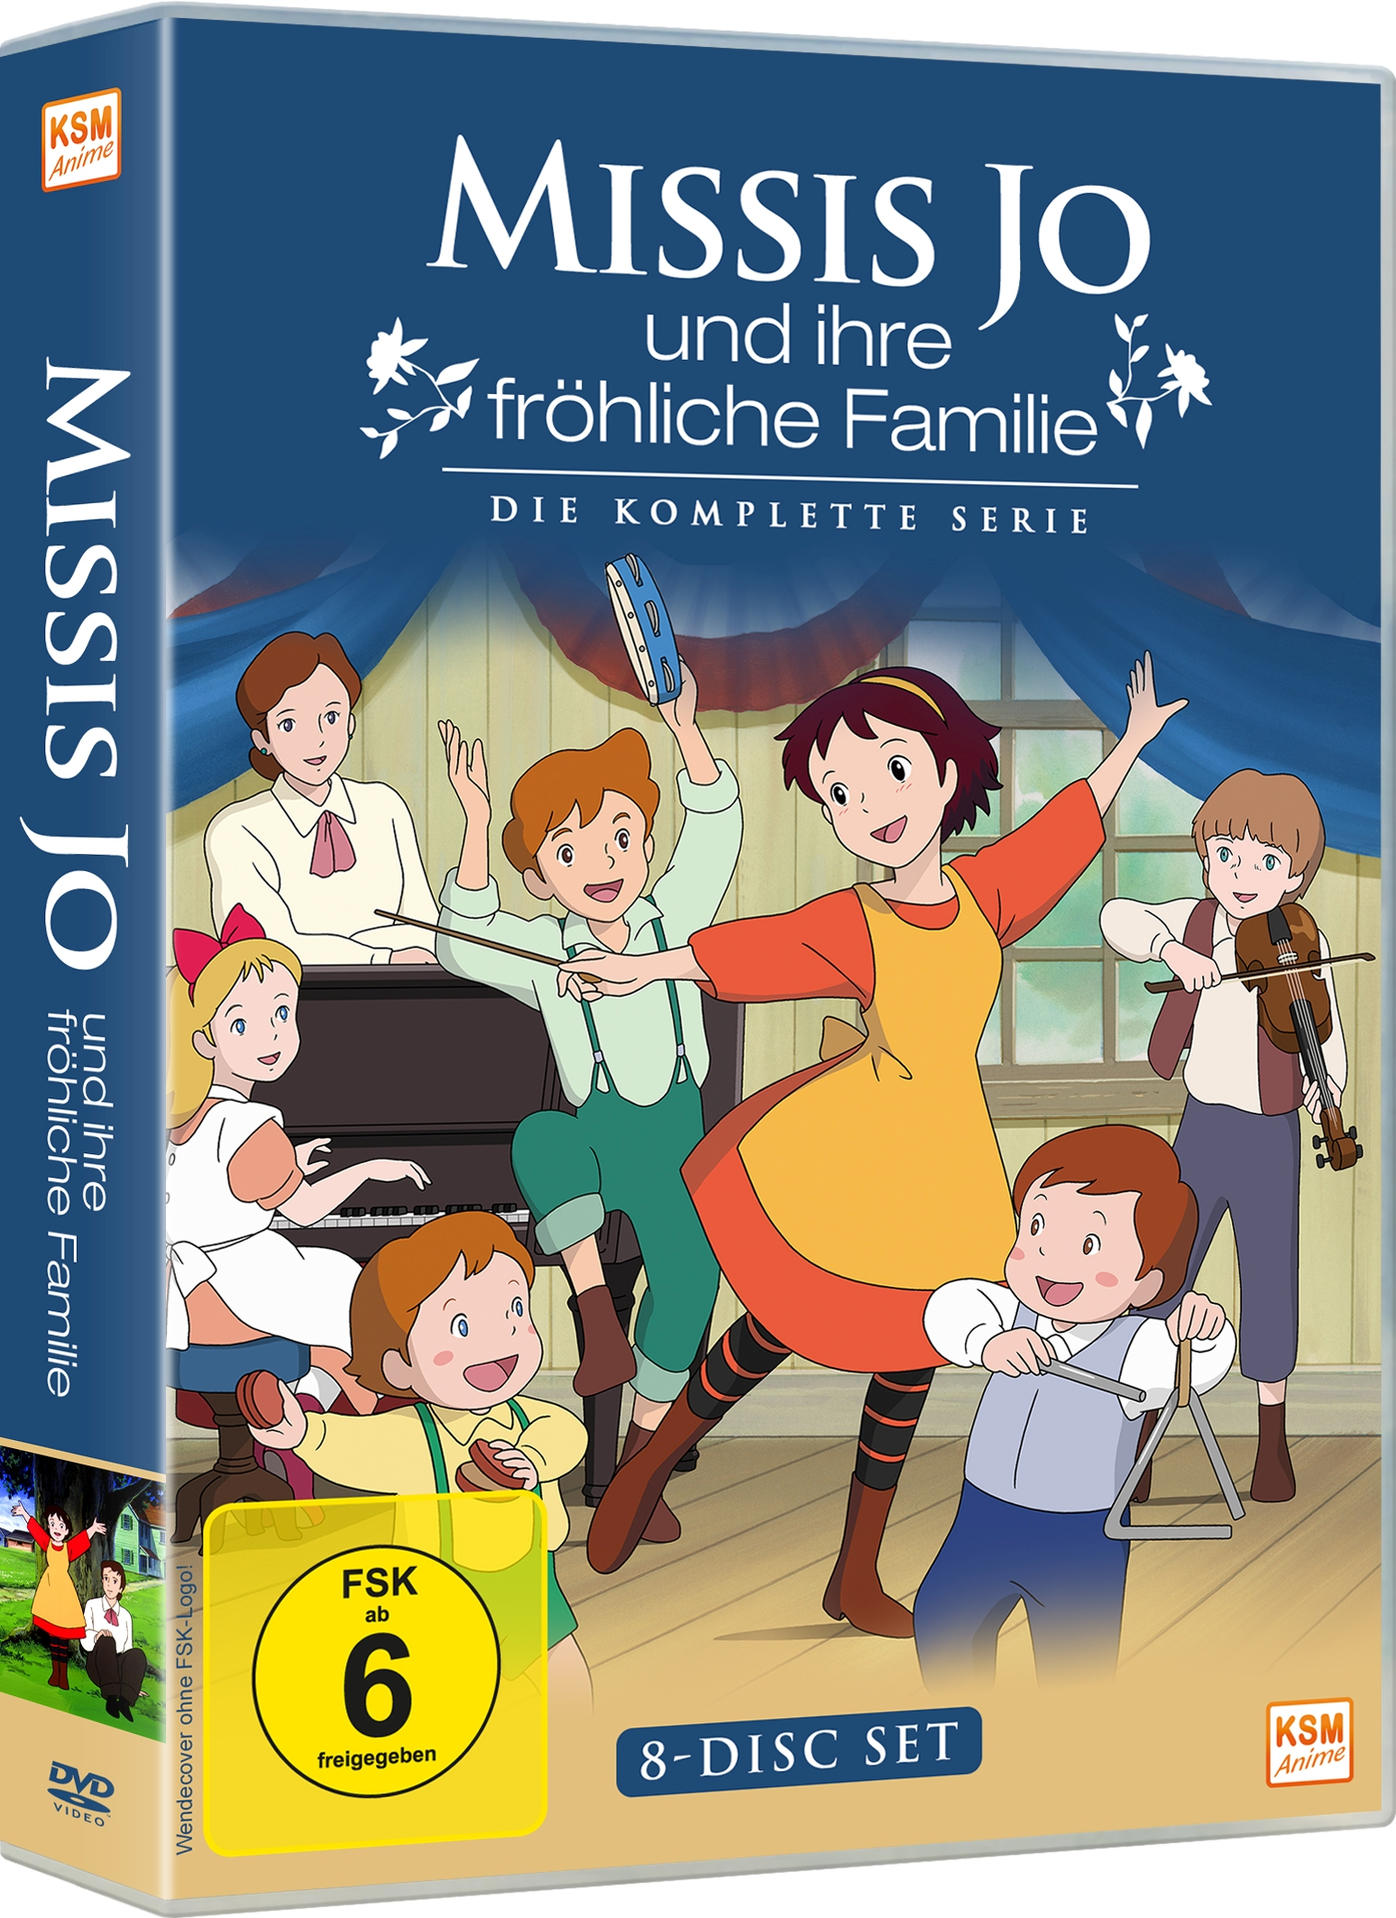 Die Jo Serie und fröhliche komplette DVD Familie Missis - ihre